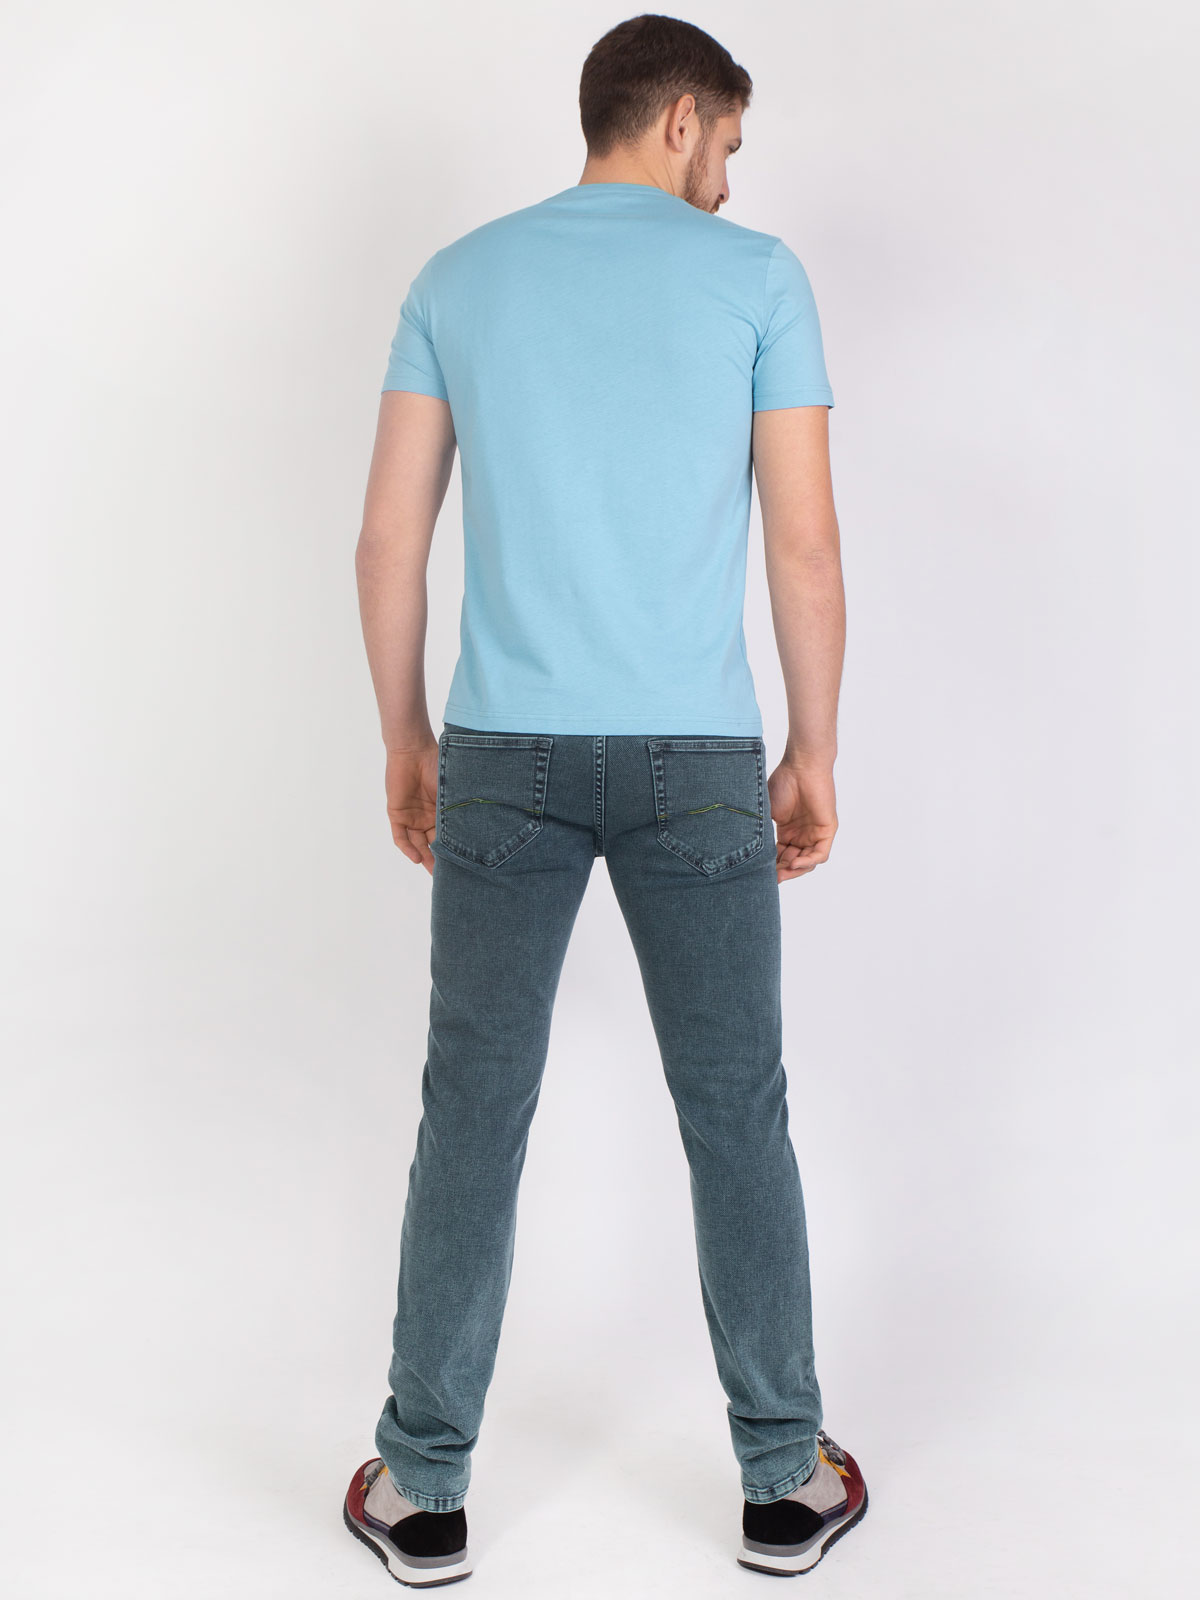 Μπλουζάκι γαλάζιο με στρογγυλό έμπλαστρο - 96381 € 11.81 img3